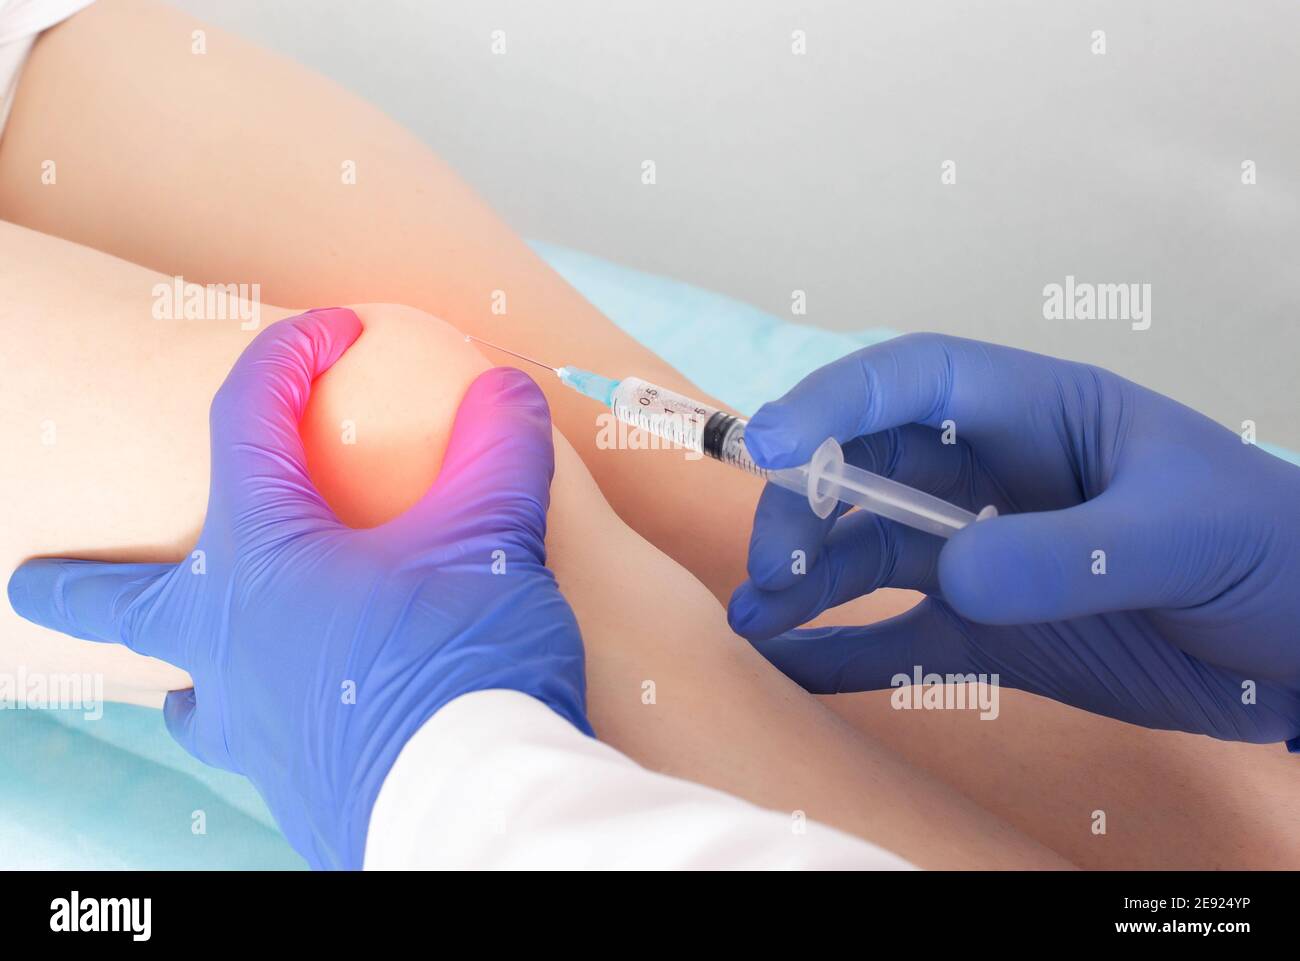 Der Arzt injiziert Injektionen mit Hyaluronsäure in das Kniegelenk eines  Patienten mit Schmerzen und Arthrose im Knie. Konzept der gemeinsamen  Behandlung Stockfotografie - Alamy